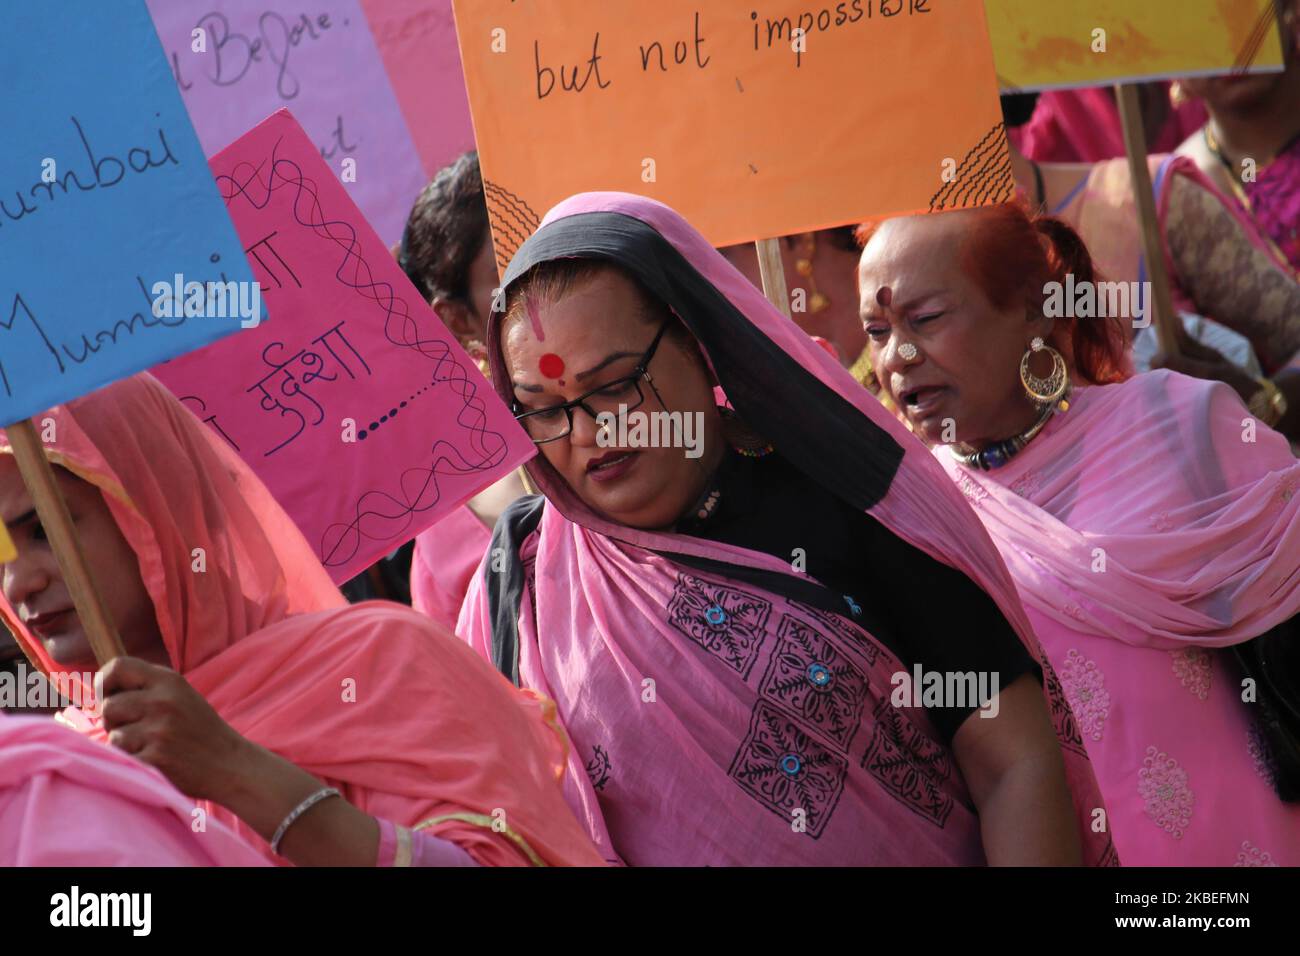 Les militants transgenres tiennent des pancartes lors d'un rassemblement à Mumbai, en Inde, le 13 janvier 2020. Le sixième rassemblement rose organisé lundi par une ONG, Kinnar Maa Trust, contre le gouvernement de l'État qui réclame diverses demandes. (Photo par Himanshu Bhatt/NurPhoto) Banque D'Images